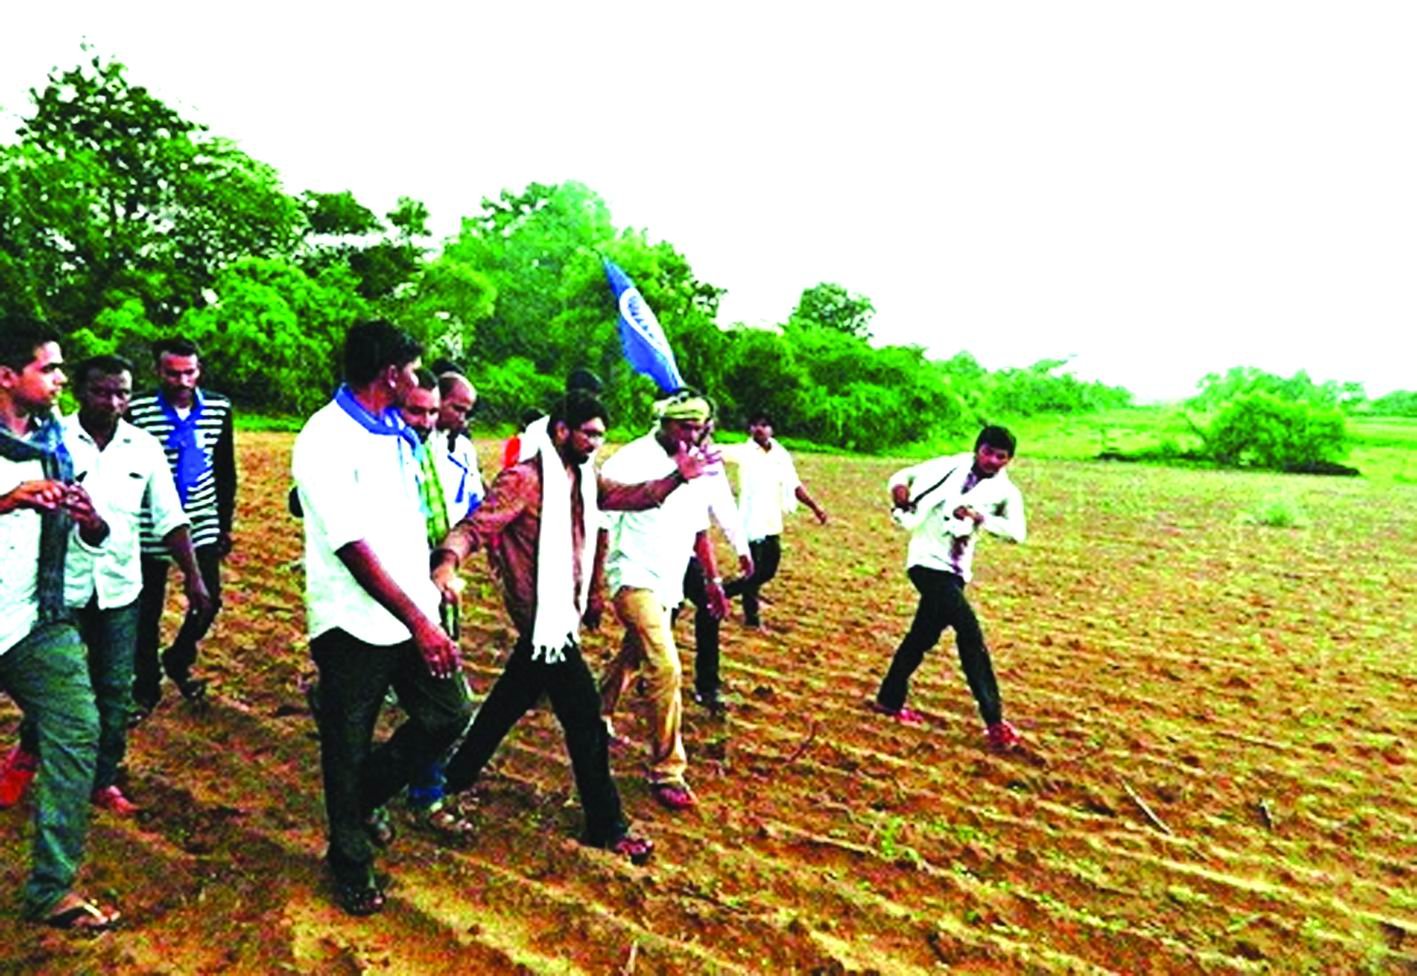 જીજ્ઞેશ મેવાણીના નેતૃત્વમાં ગુજરાતમાં દલિતોને  ફાળવવામાં આવેલી દાયકાઓ જૂની જમીન પરત મળી